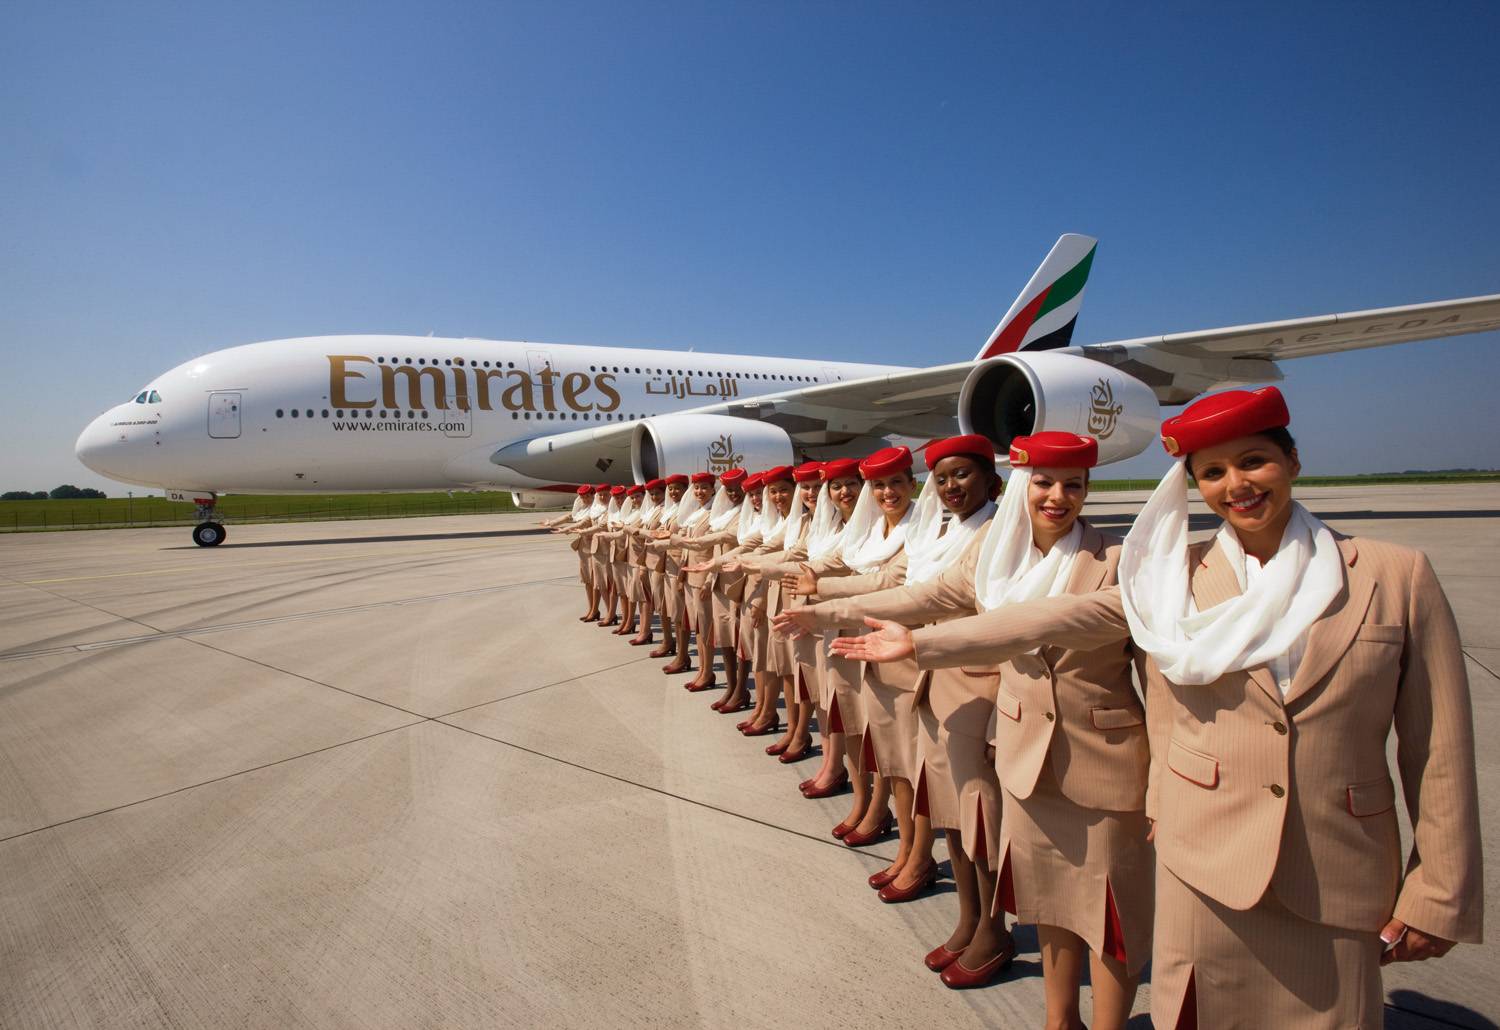 Эмирейтс (emirates airlines) — авиаперевозчик ближнего востока